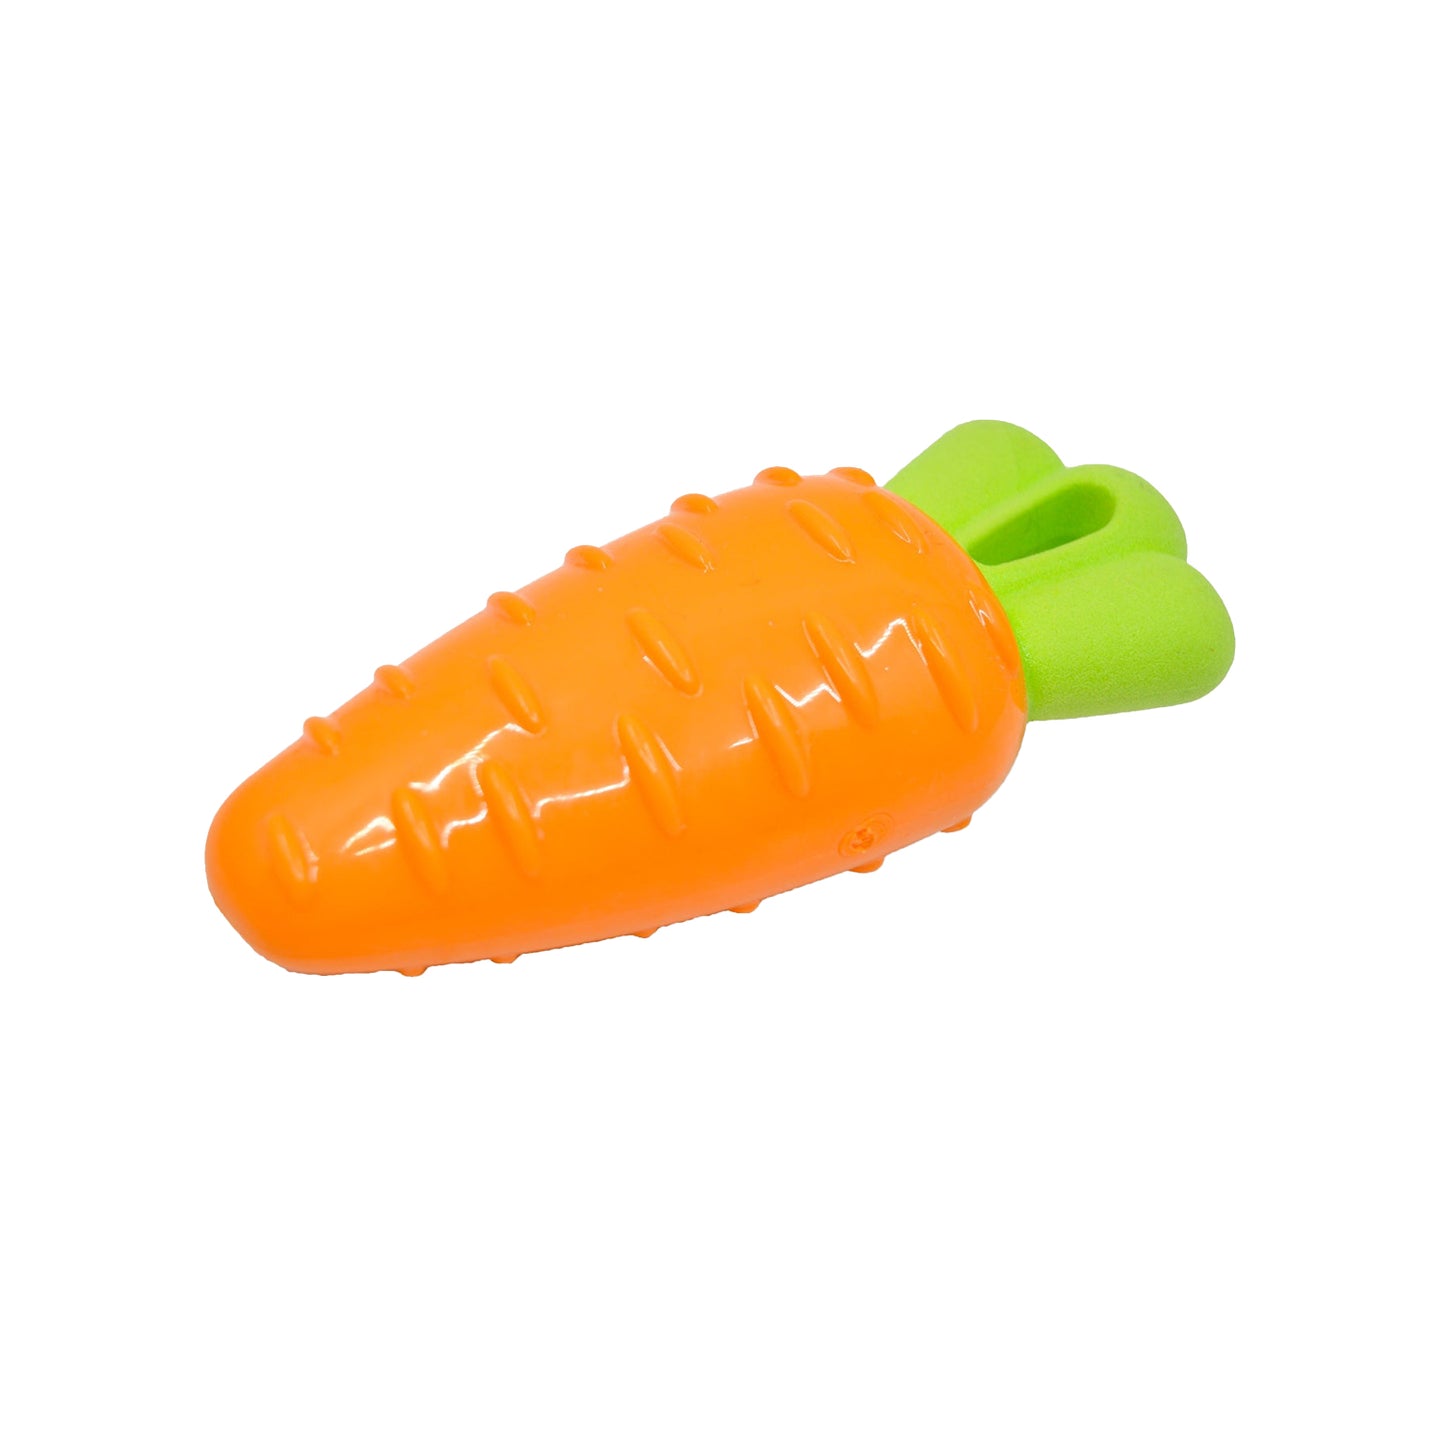 Fofos - Vegi Bites Screaming Squeaky Dog Toy